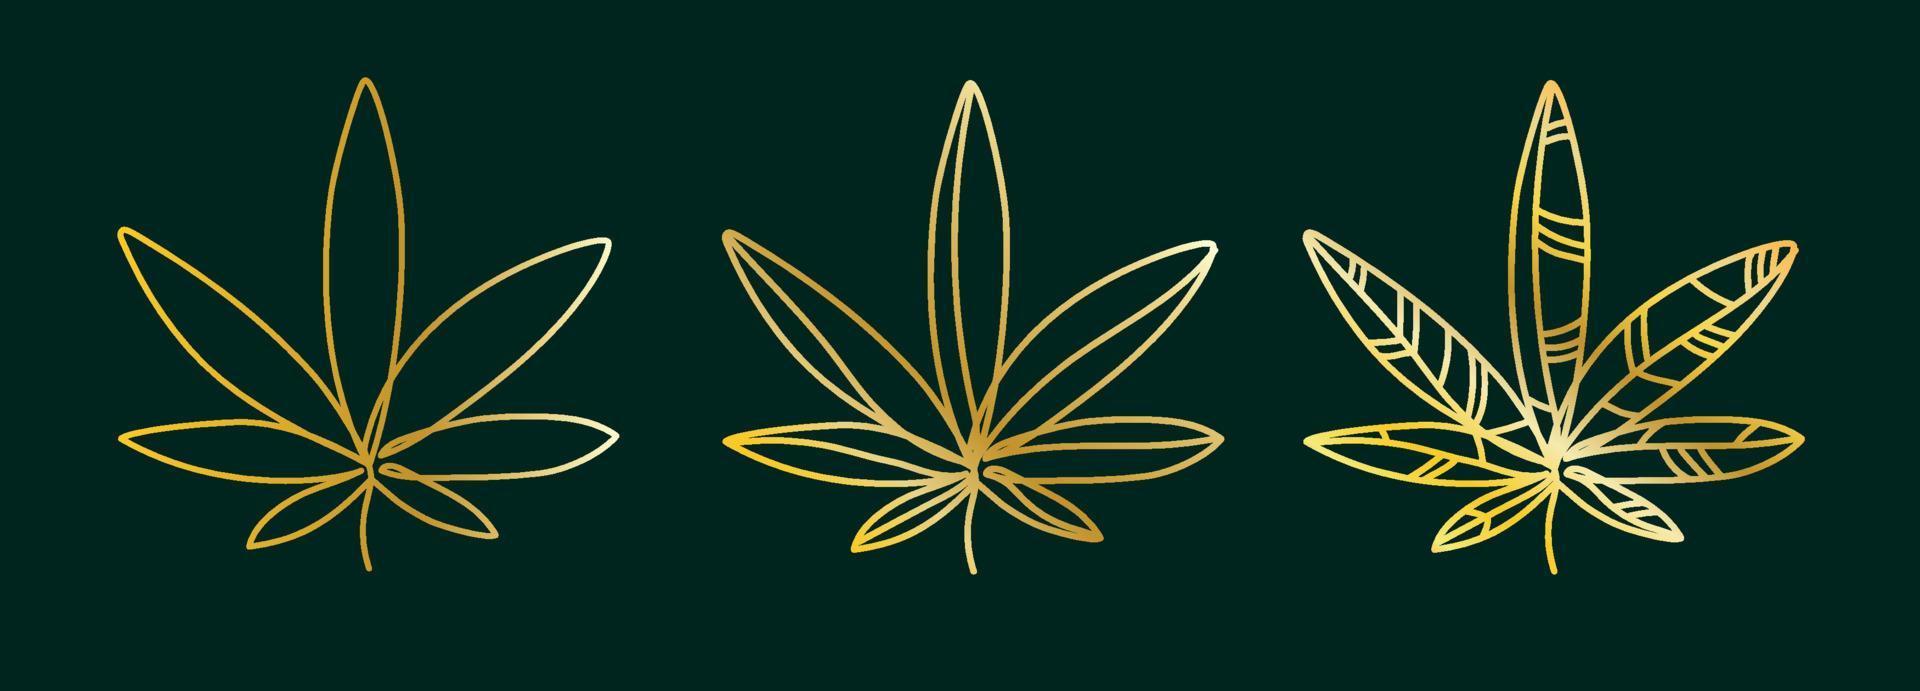 feuille de cannabis dorée, chanvre sur fond vert foncé ensemble de logos.simple illustration graphique de conception de vecteur de cannabis minimaliste